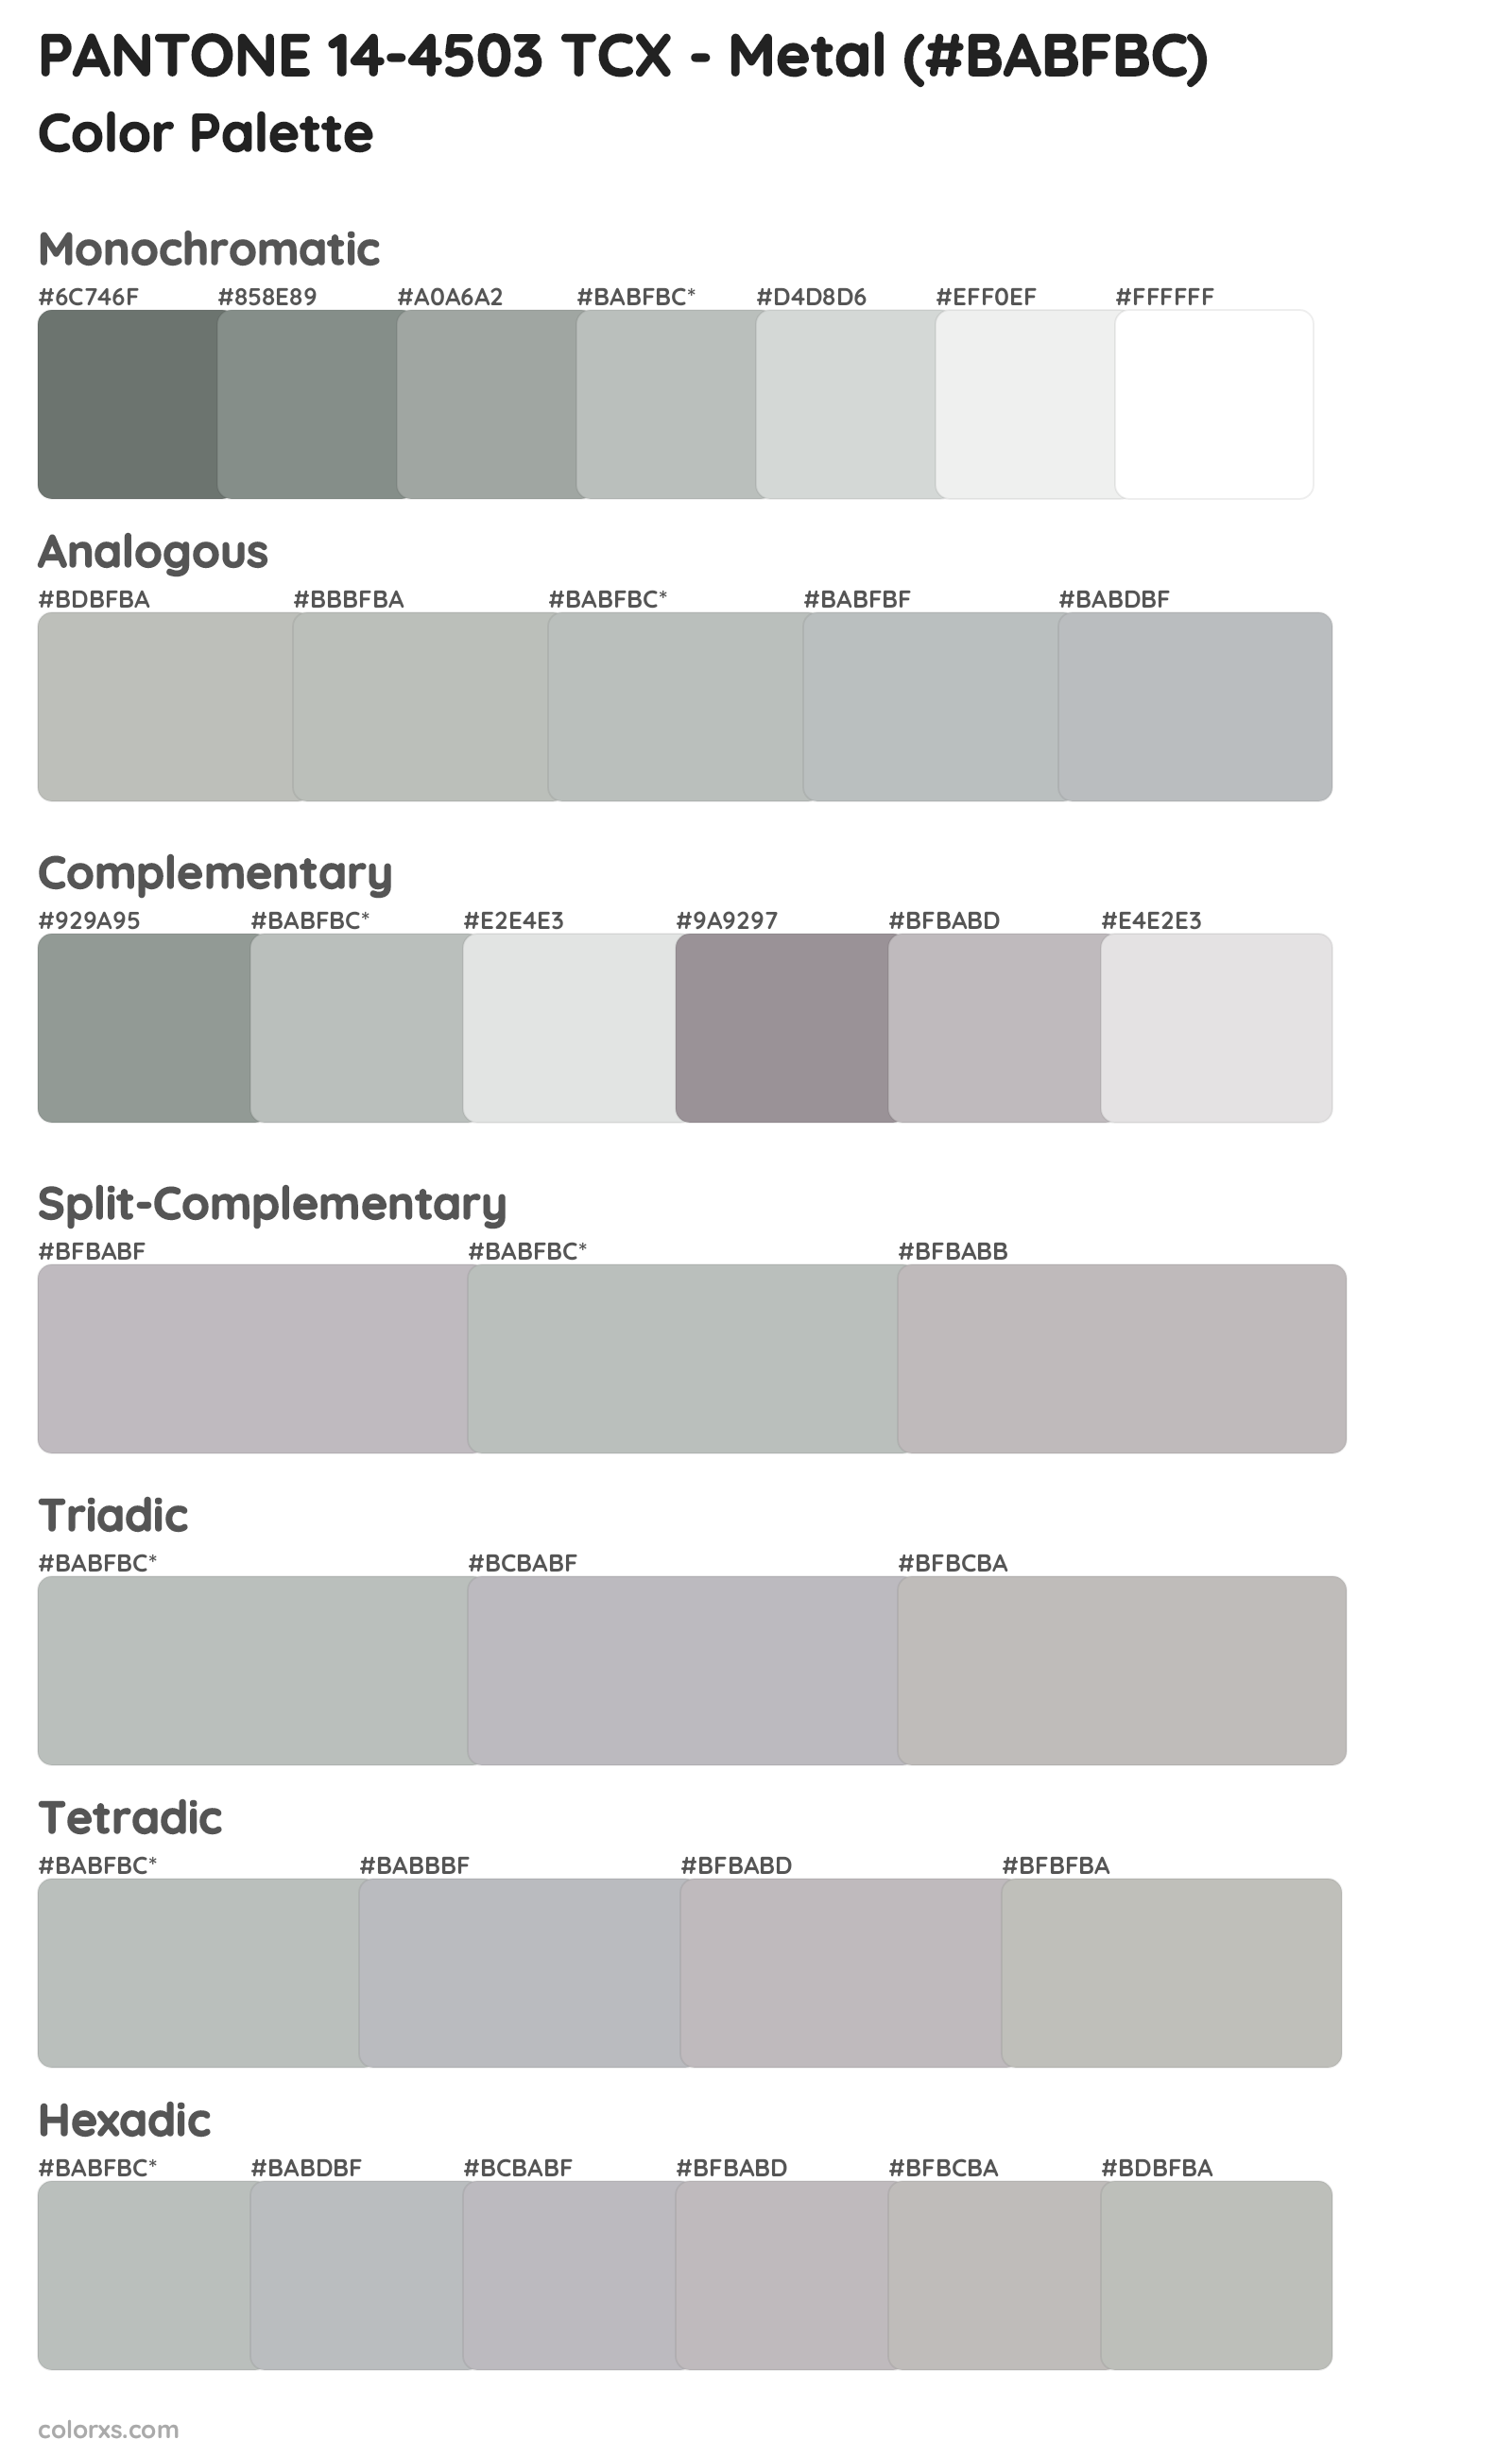 PANTONE 14-4503 TCX - Metal Color Scheme Palettes